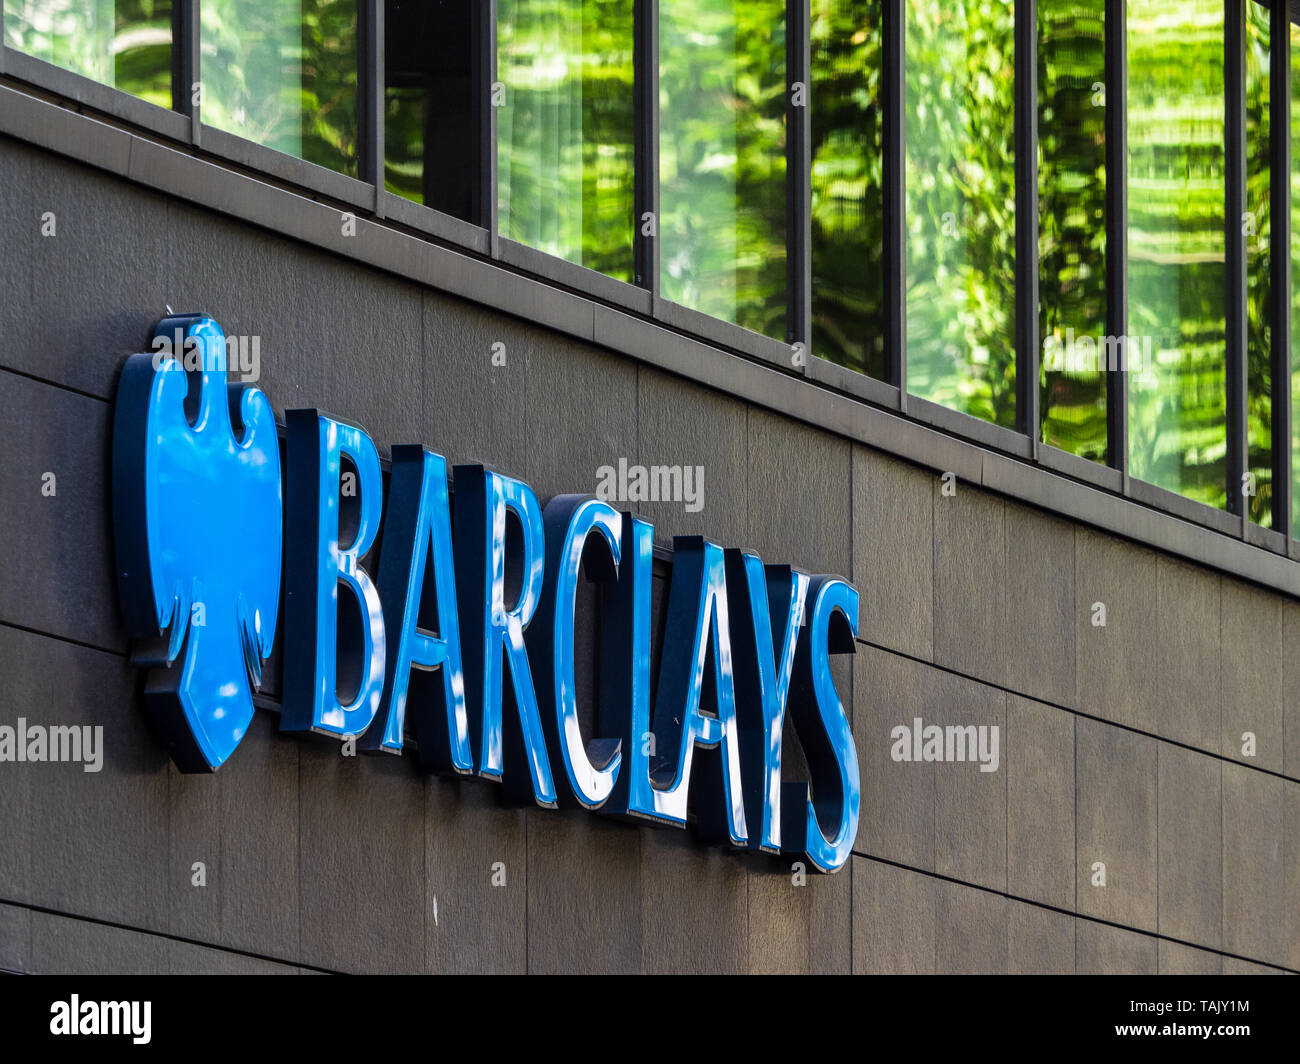 Barclays Bank Filiale Zeichen - Zeichen außerhalb der Barclays Bank London Branch bei 25 Charing Cross Road Stockfoto